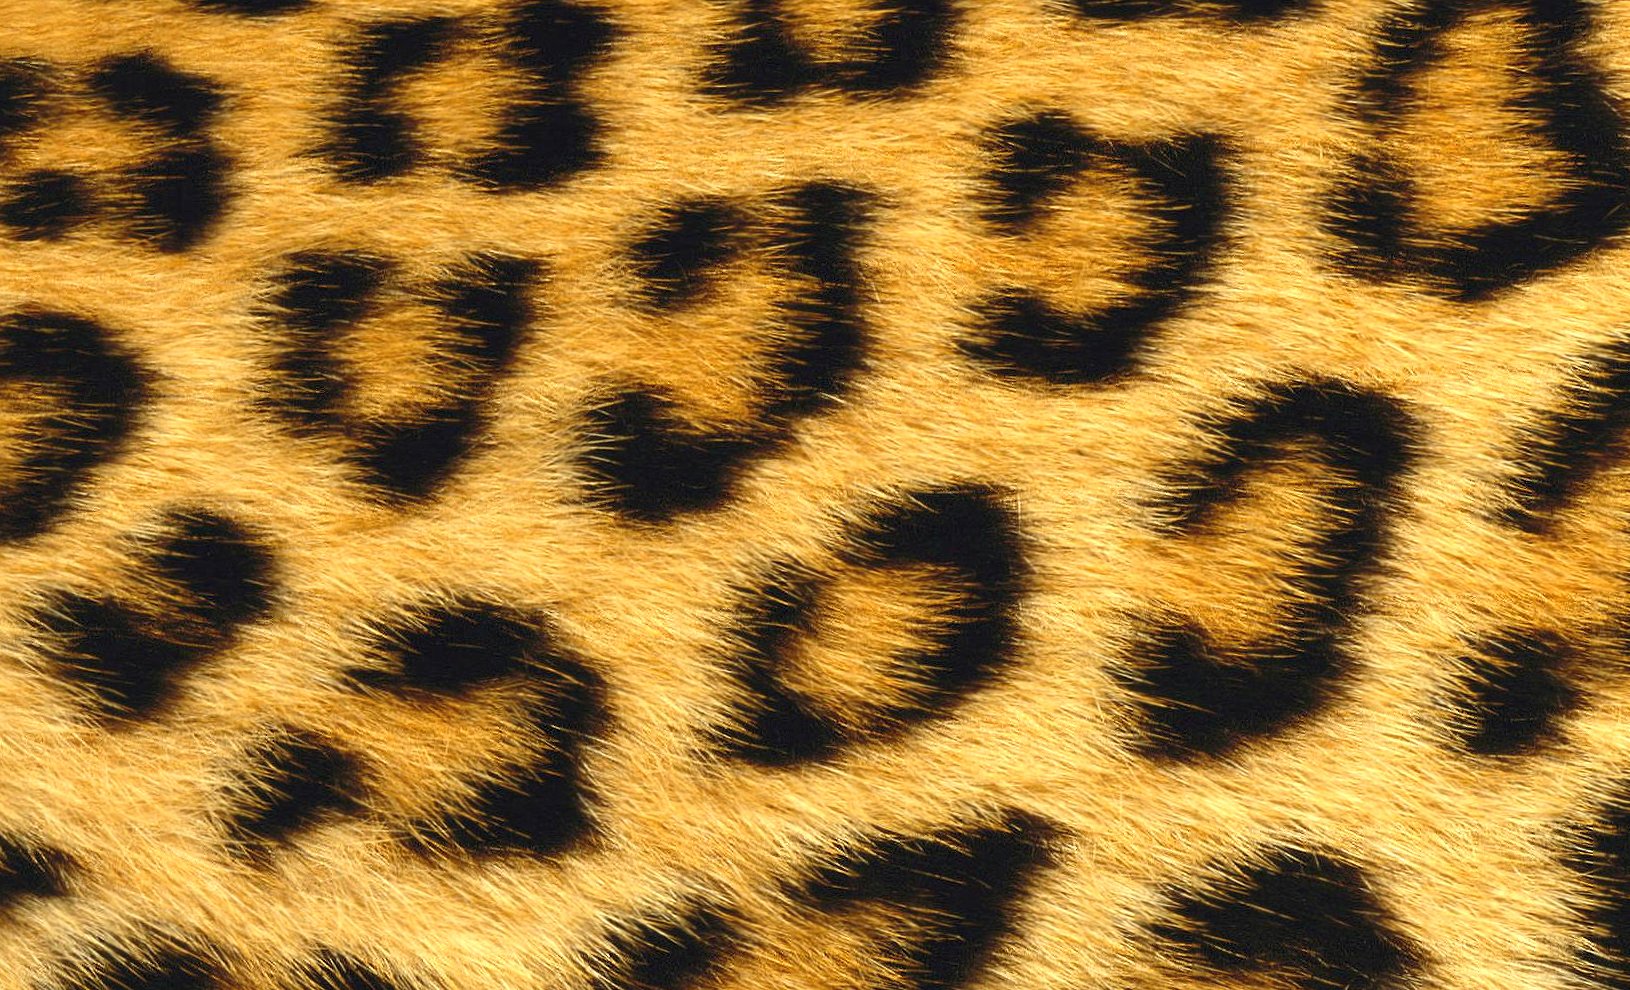 Leopard fur at 1024 x 1024 iPad size wallpapers HD quality